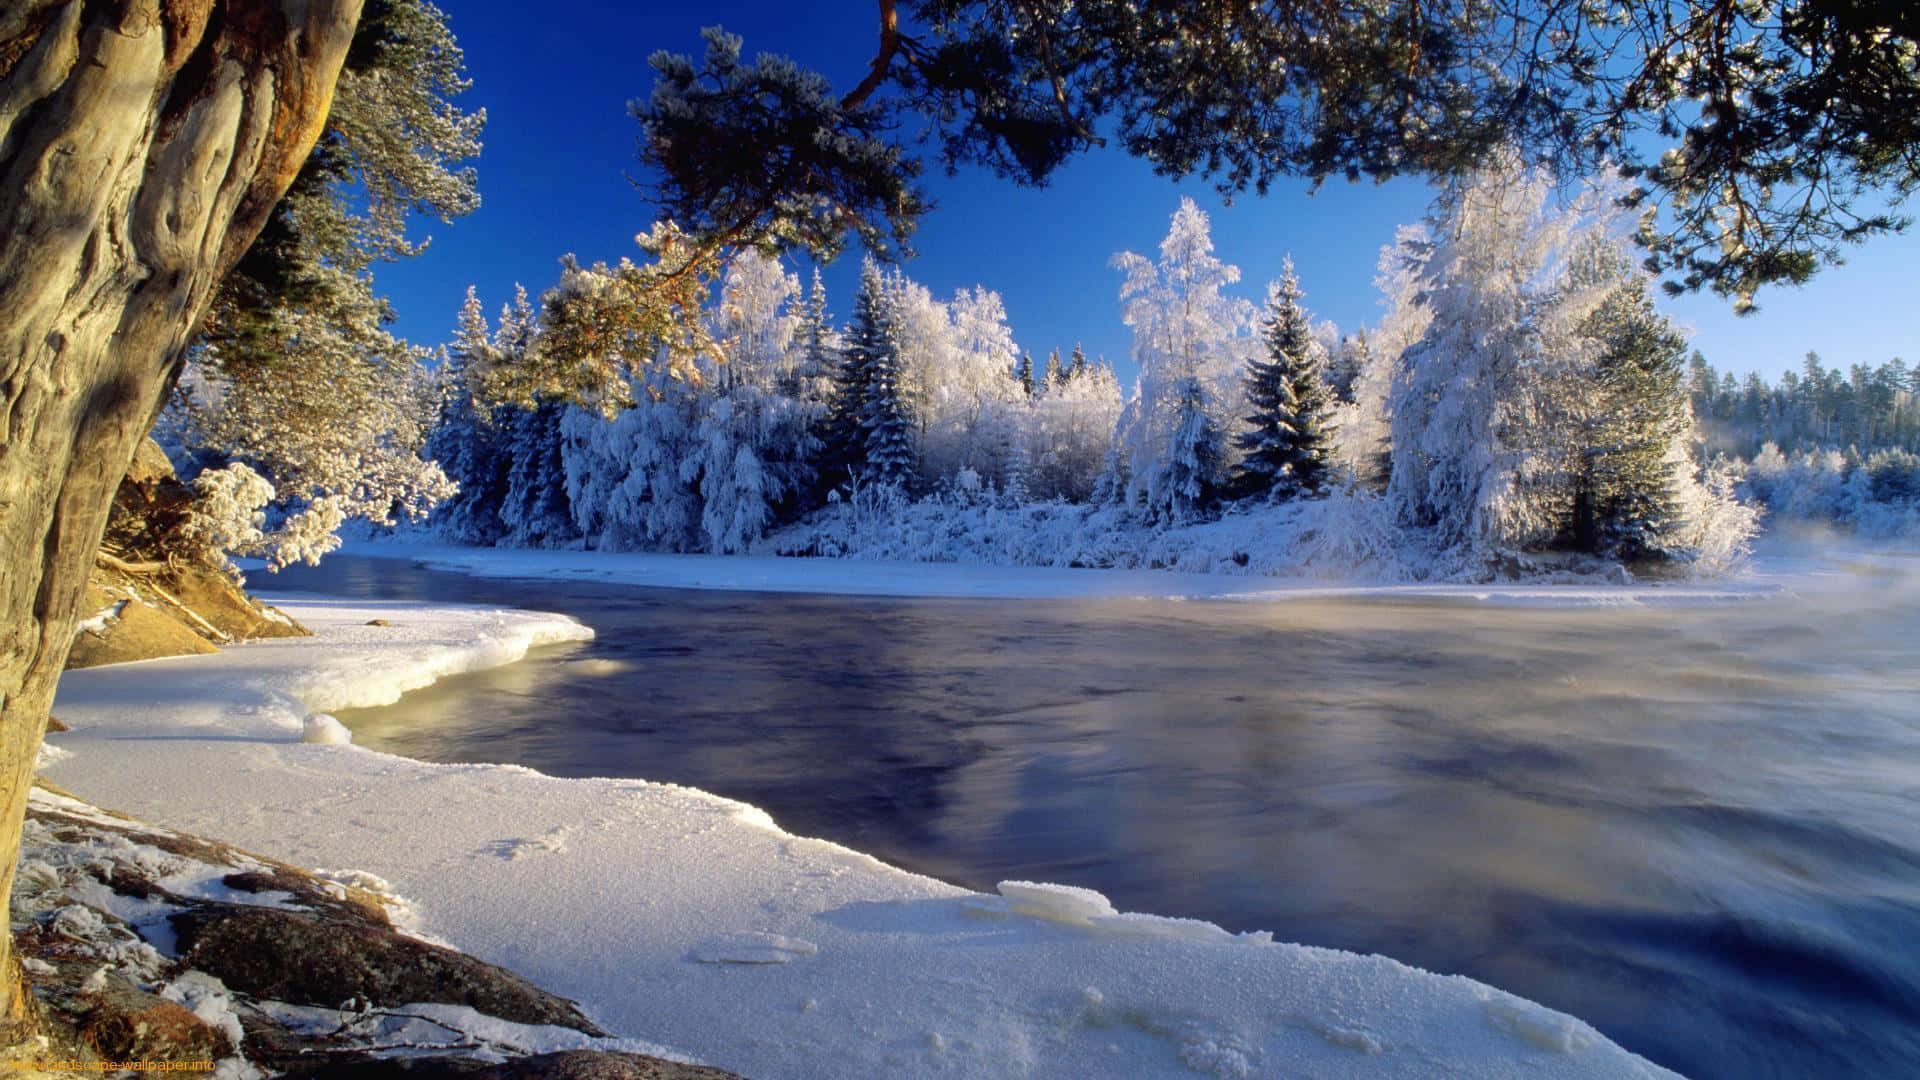 Enjoy a beautiful winter landscape